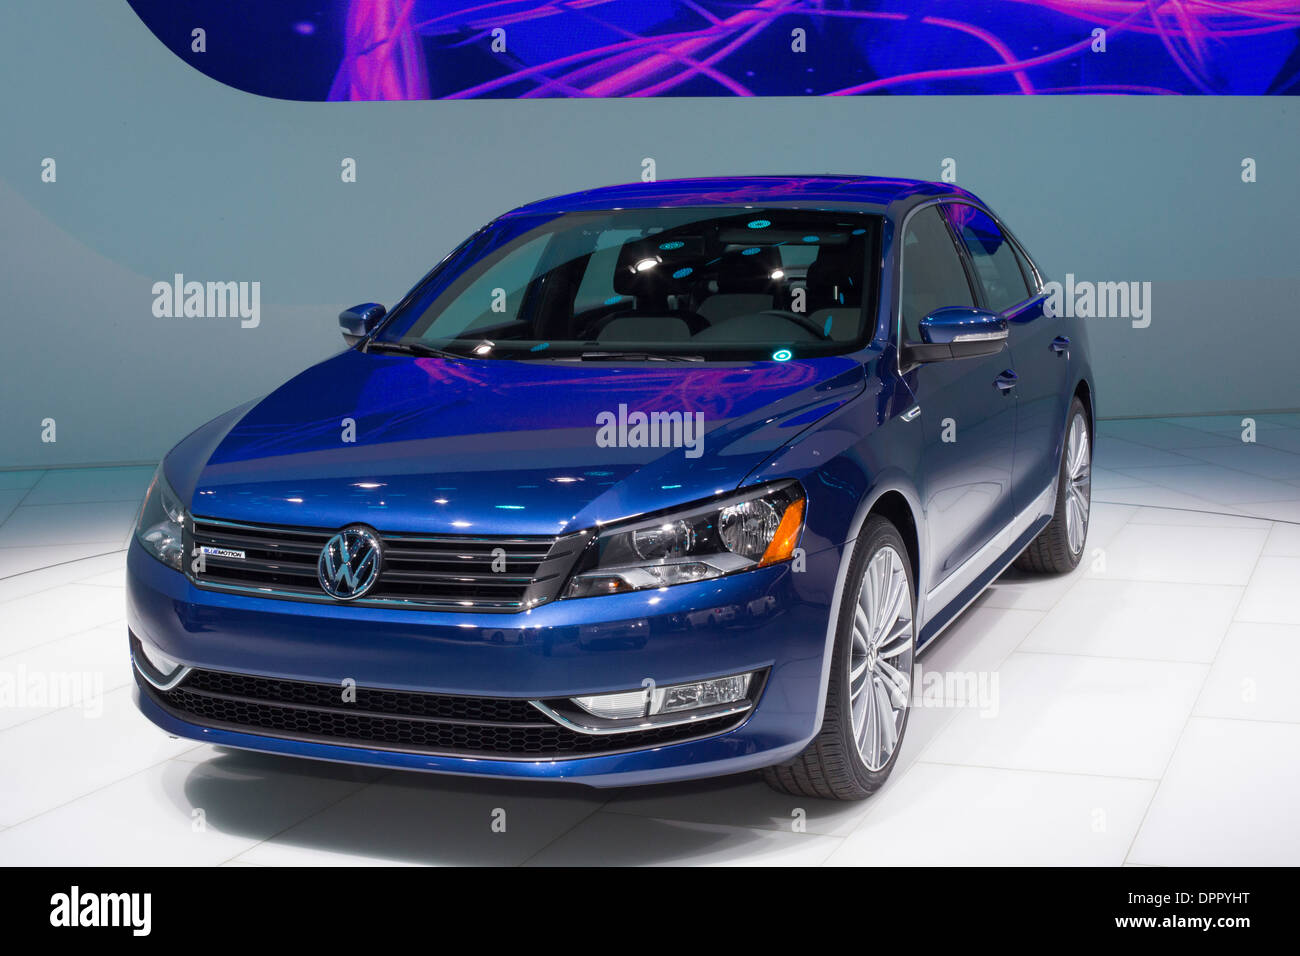 Der Volkswagen Passat Bluemotion Concept Car auf dem Display auf der North American International Auto Show. Stockfoto